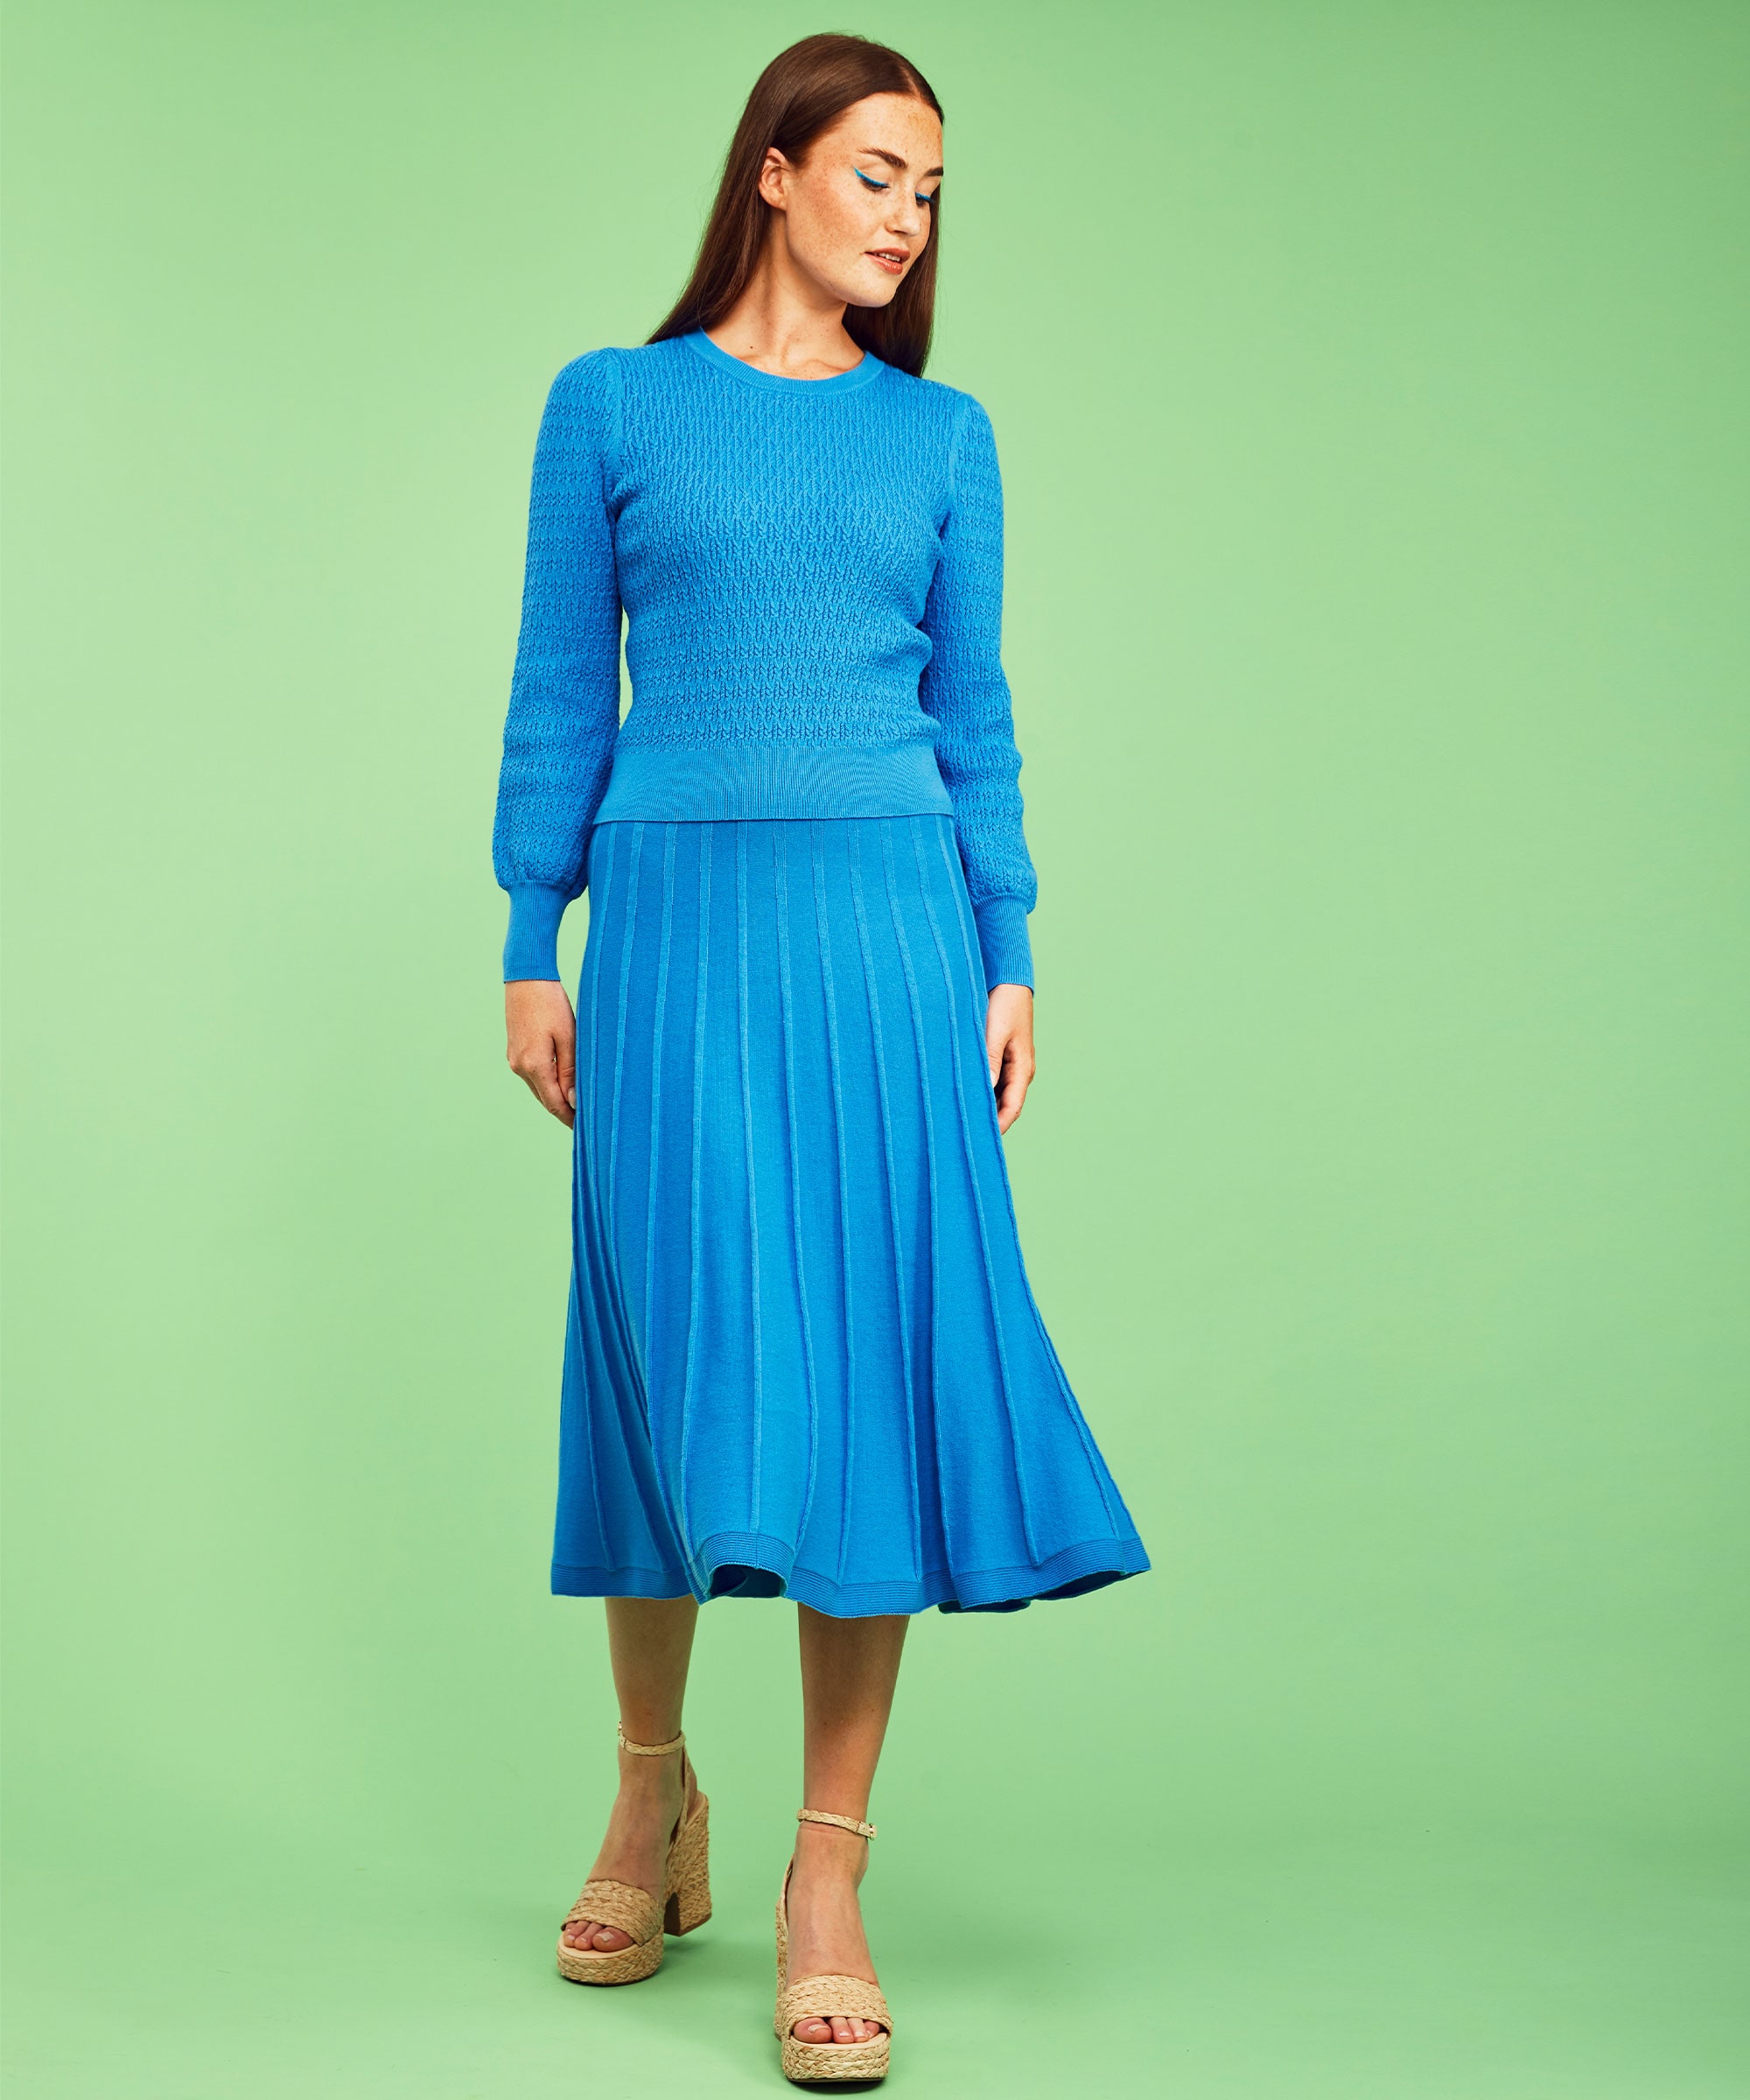 Klara Skirt Blue